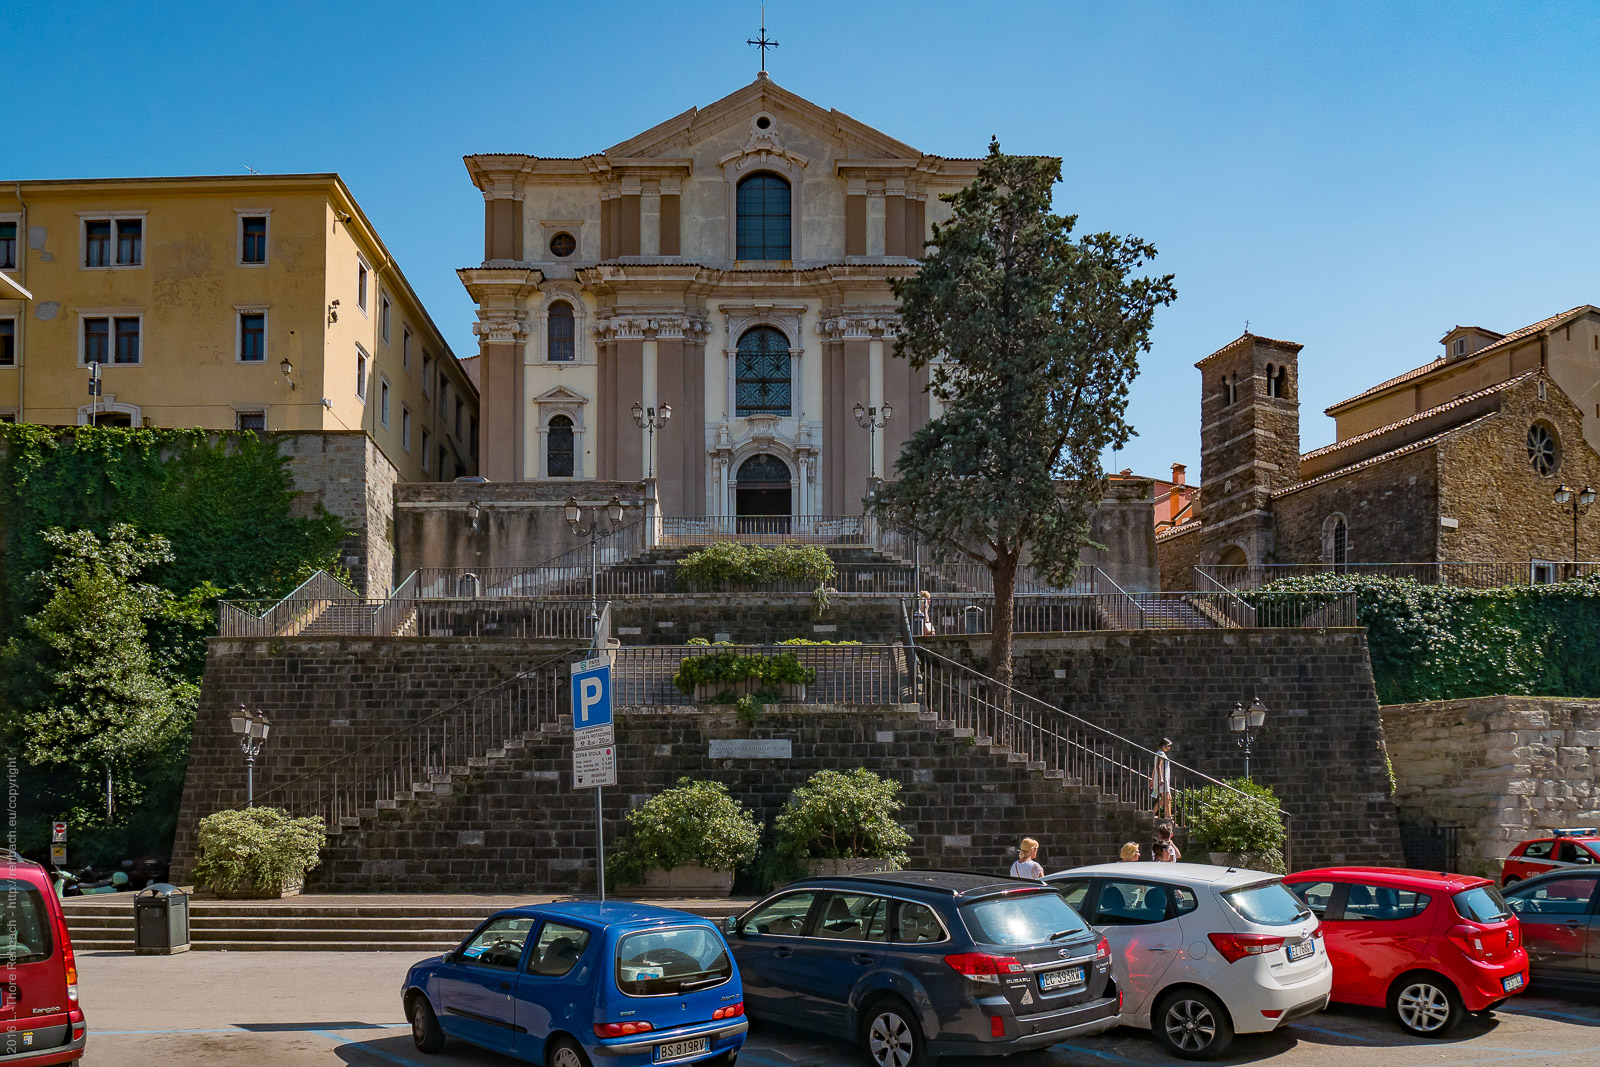 Santa Maria Maggioere Dei Gesuiti and San Silvestre (right) in Trieste